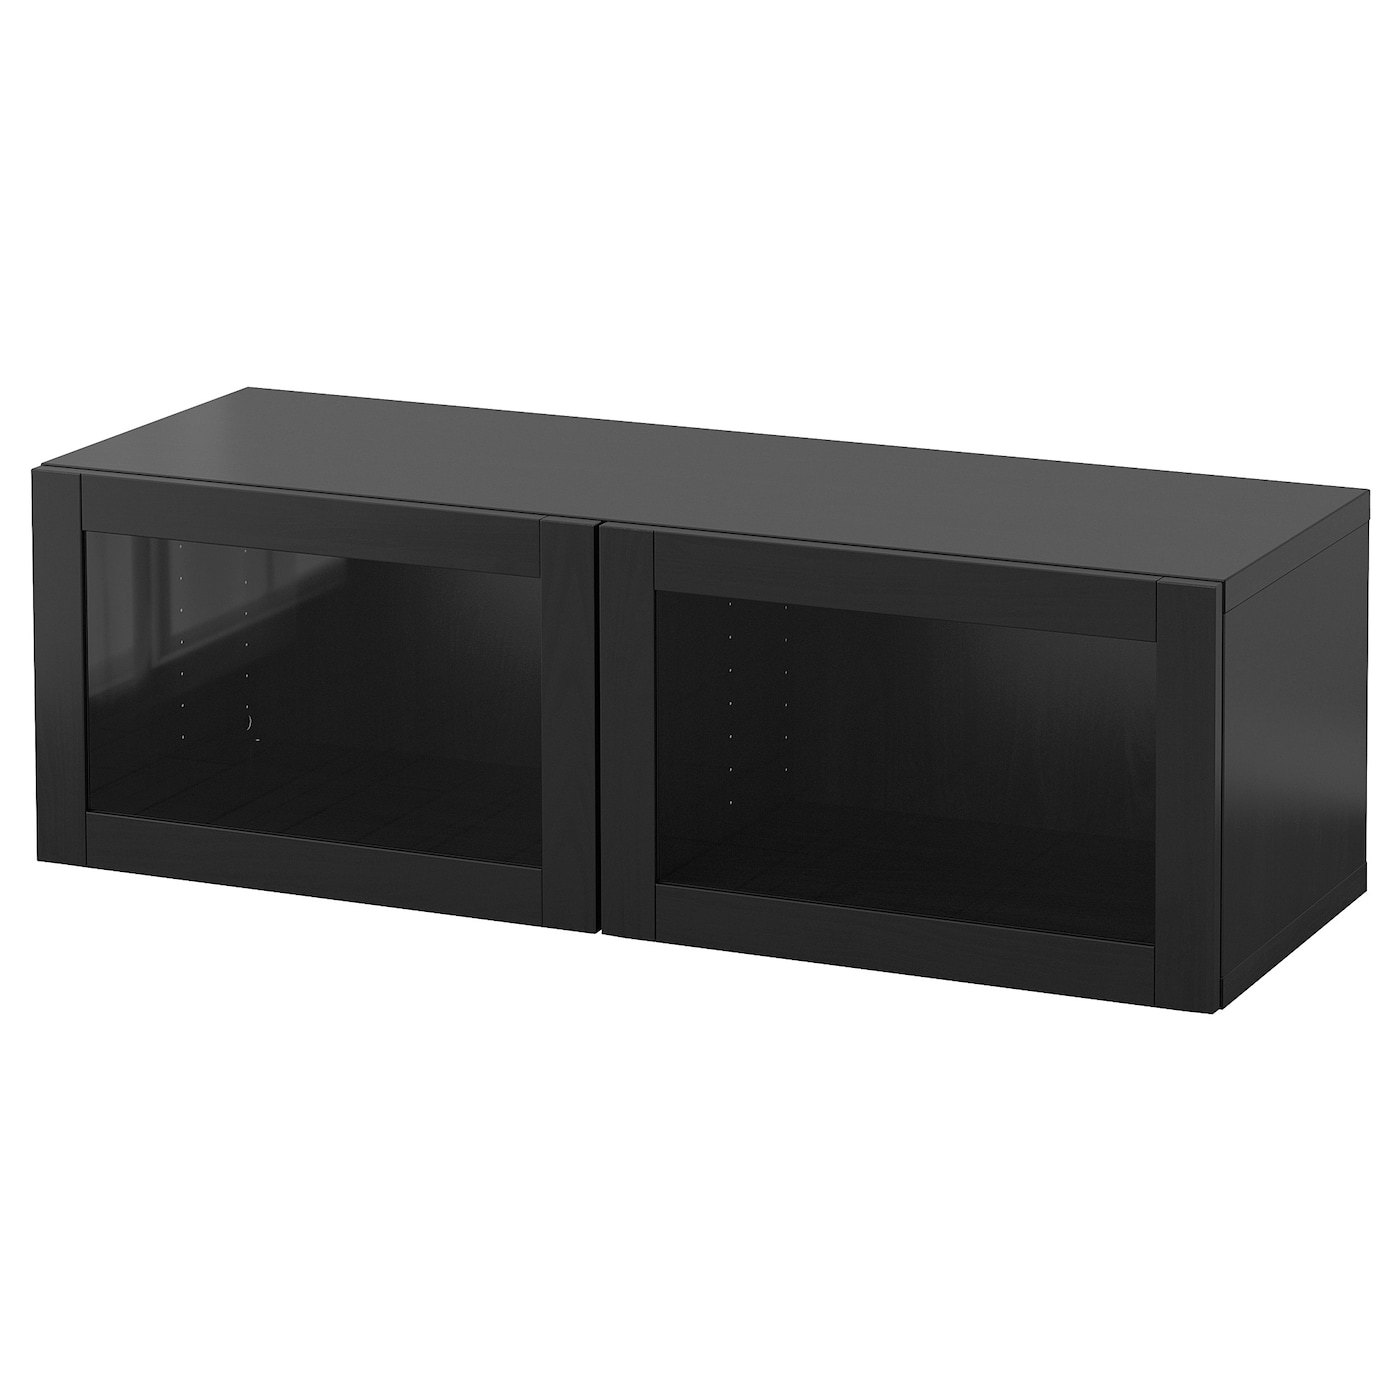 Навесной шкаф - IKEA BESTÅ/BESTA, 120x42x38 см, черный, БЕСТО ИКЕА